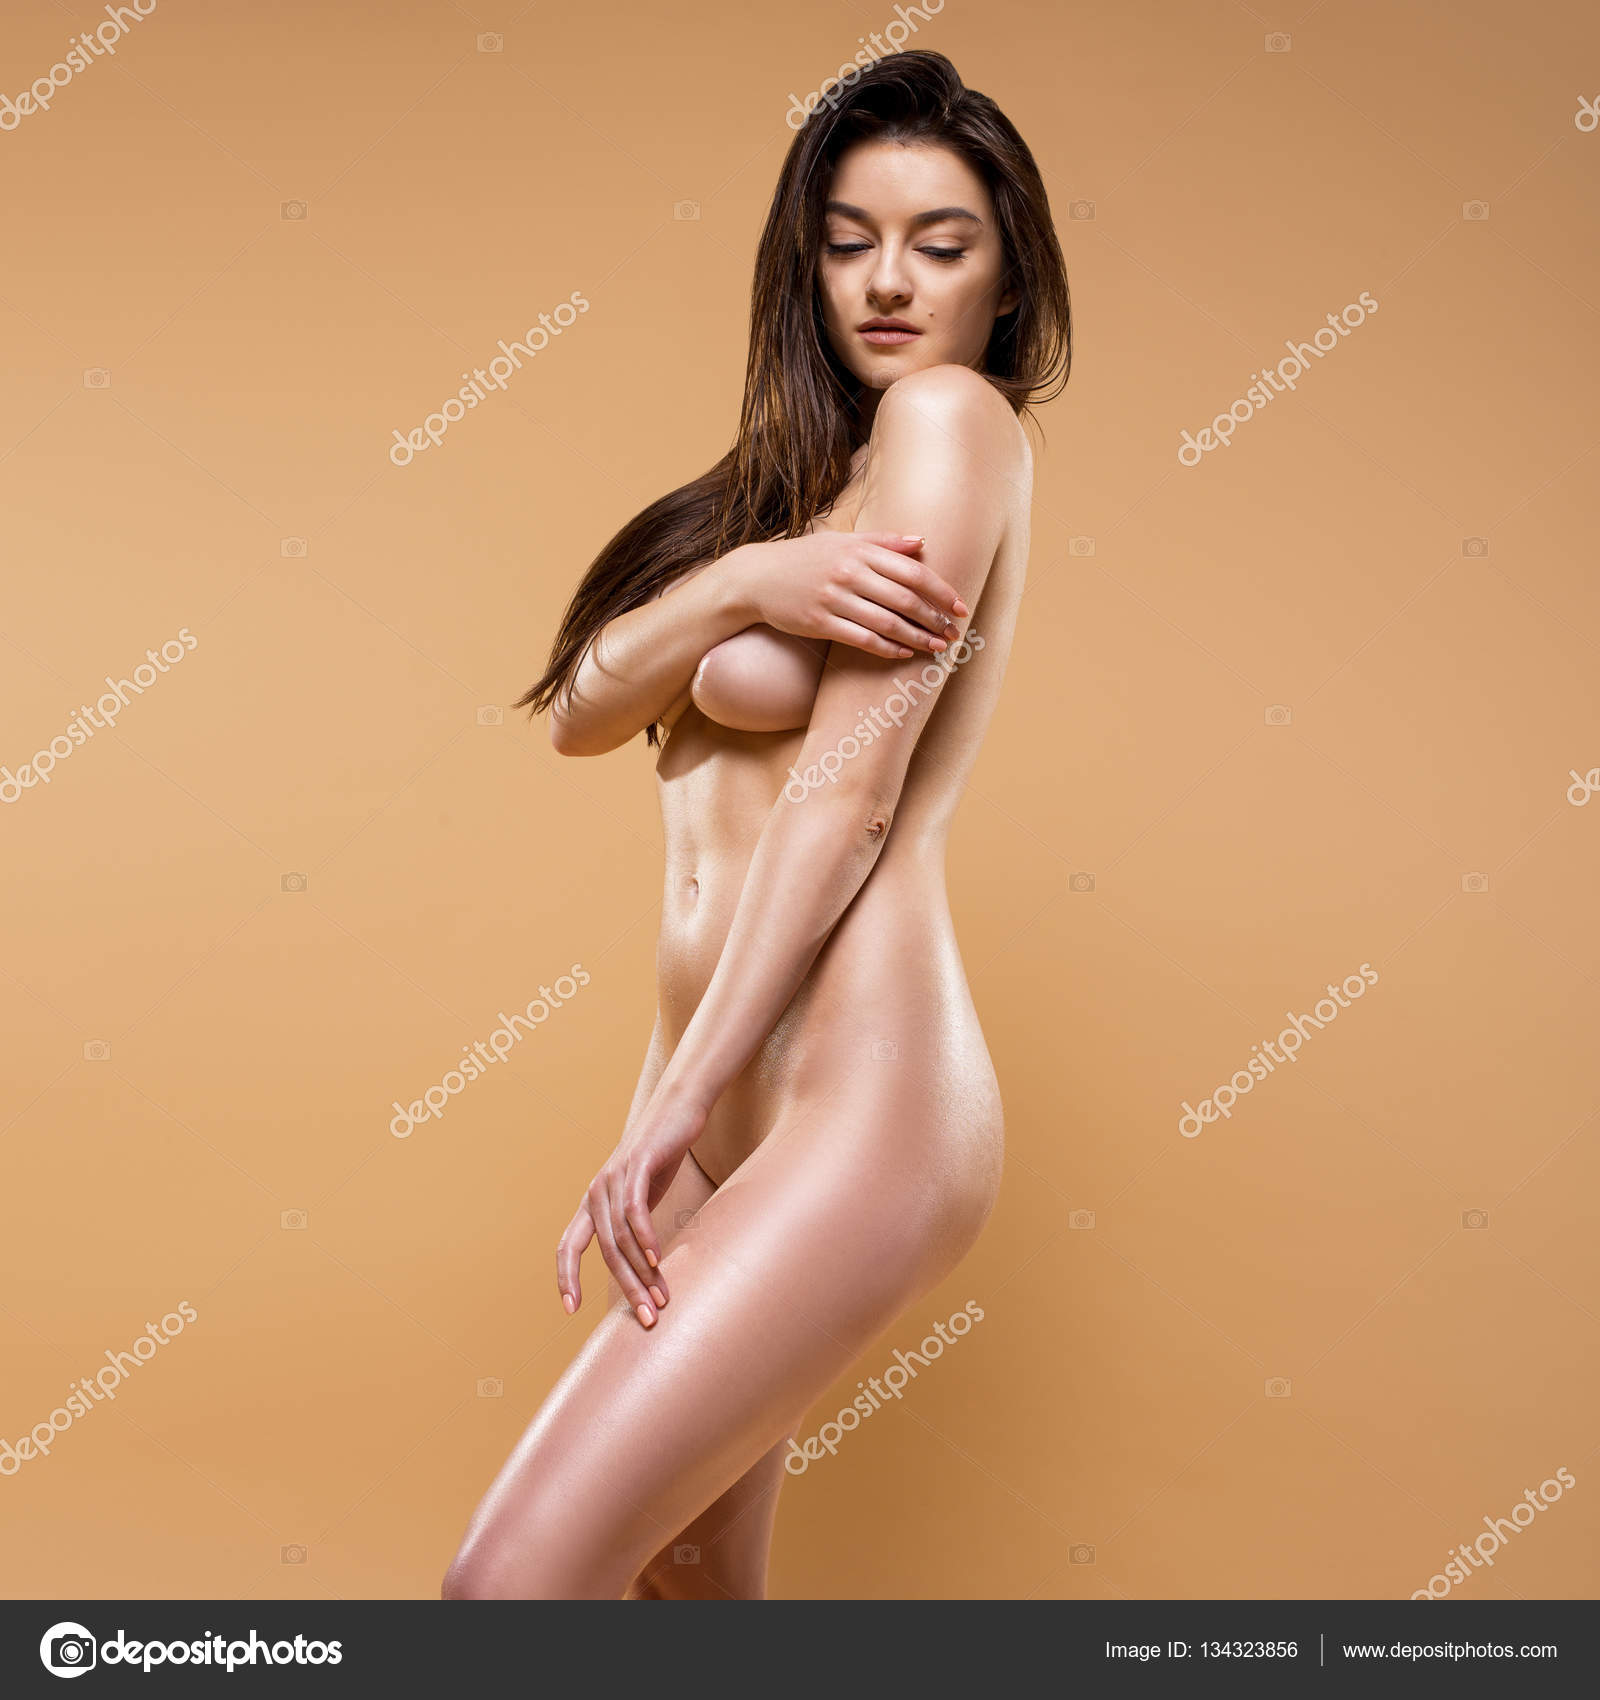 Naked posing women